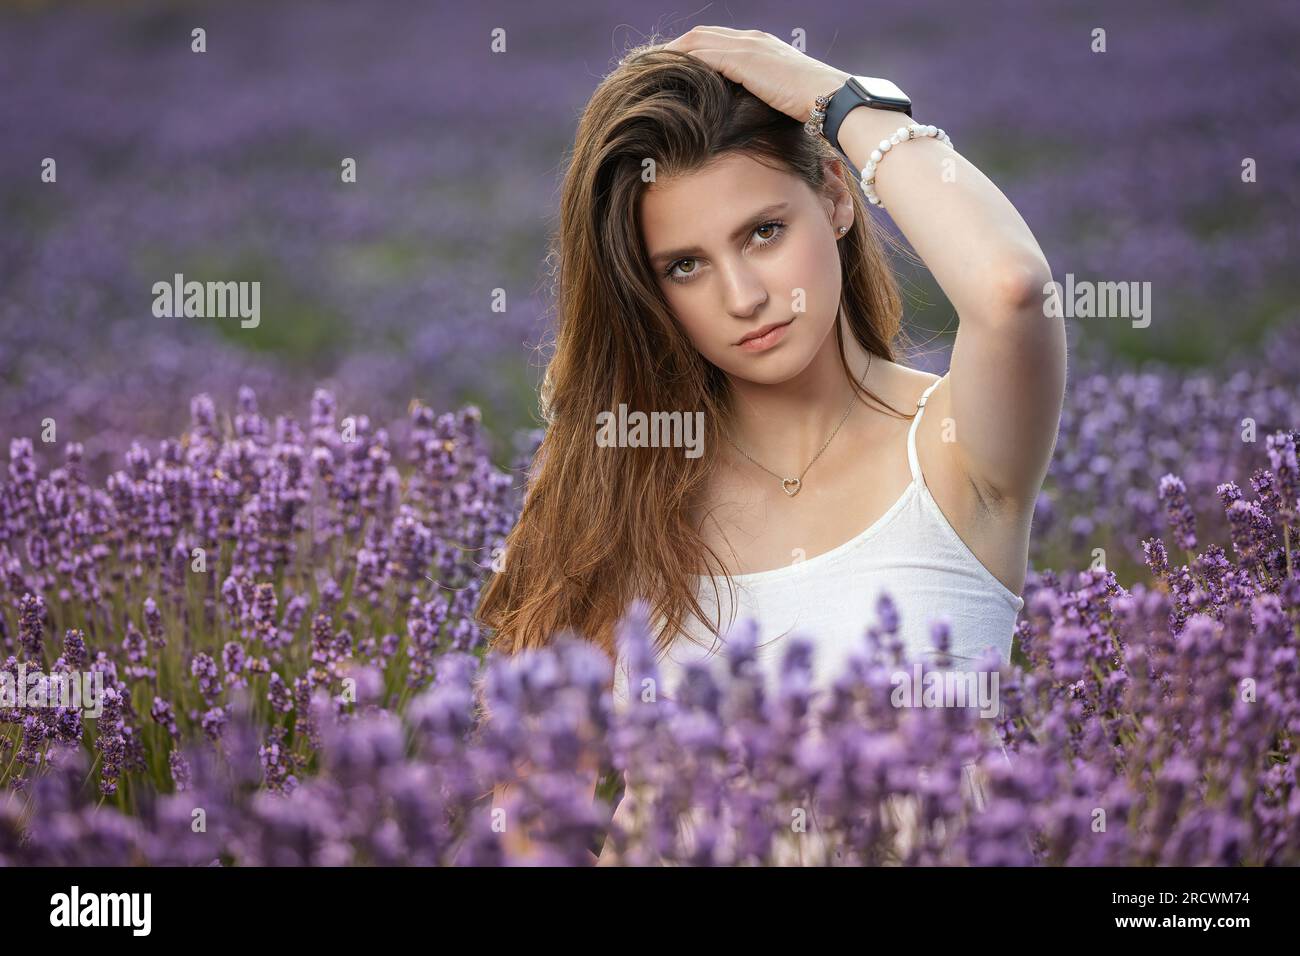 Atractive fille bronzée aux cheveux longs pose dans un champ de lavande en fleurs. Horizontalement. Banque D'Images